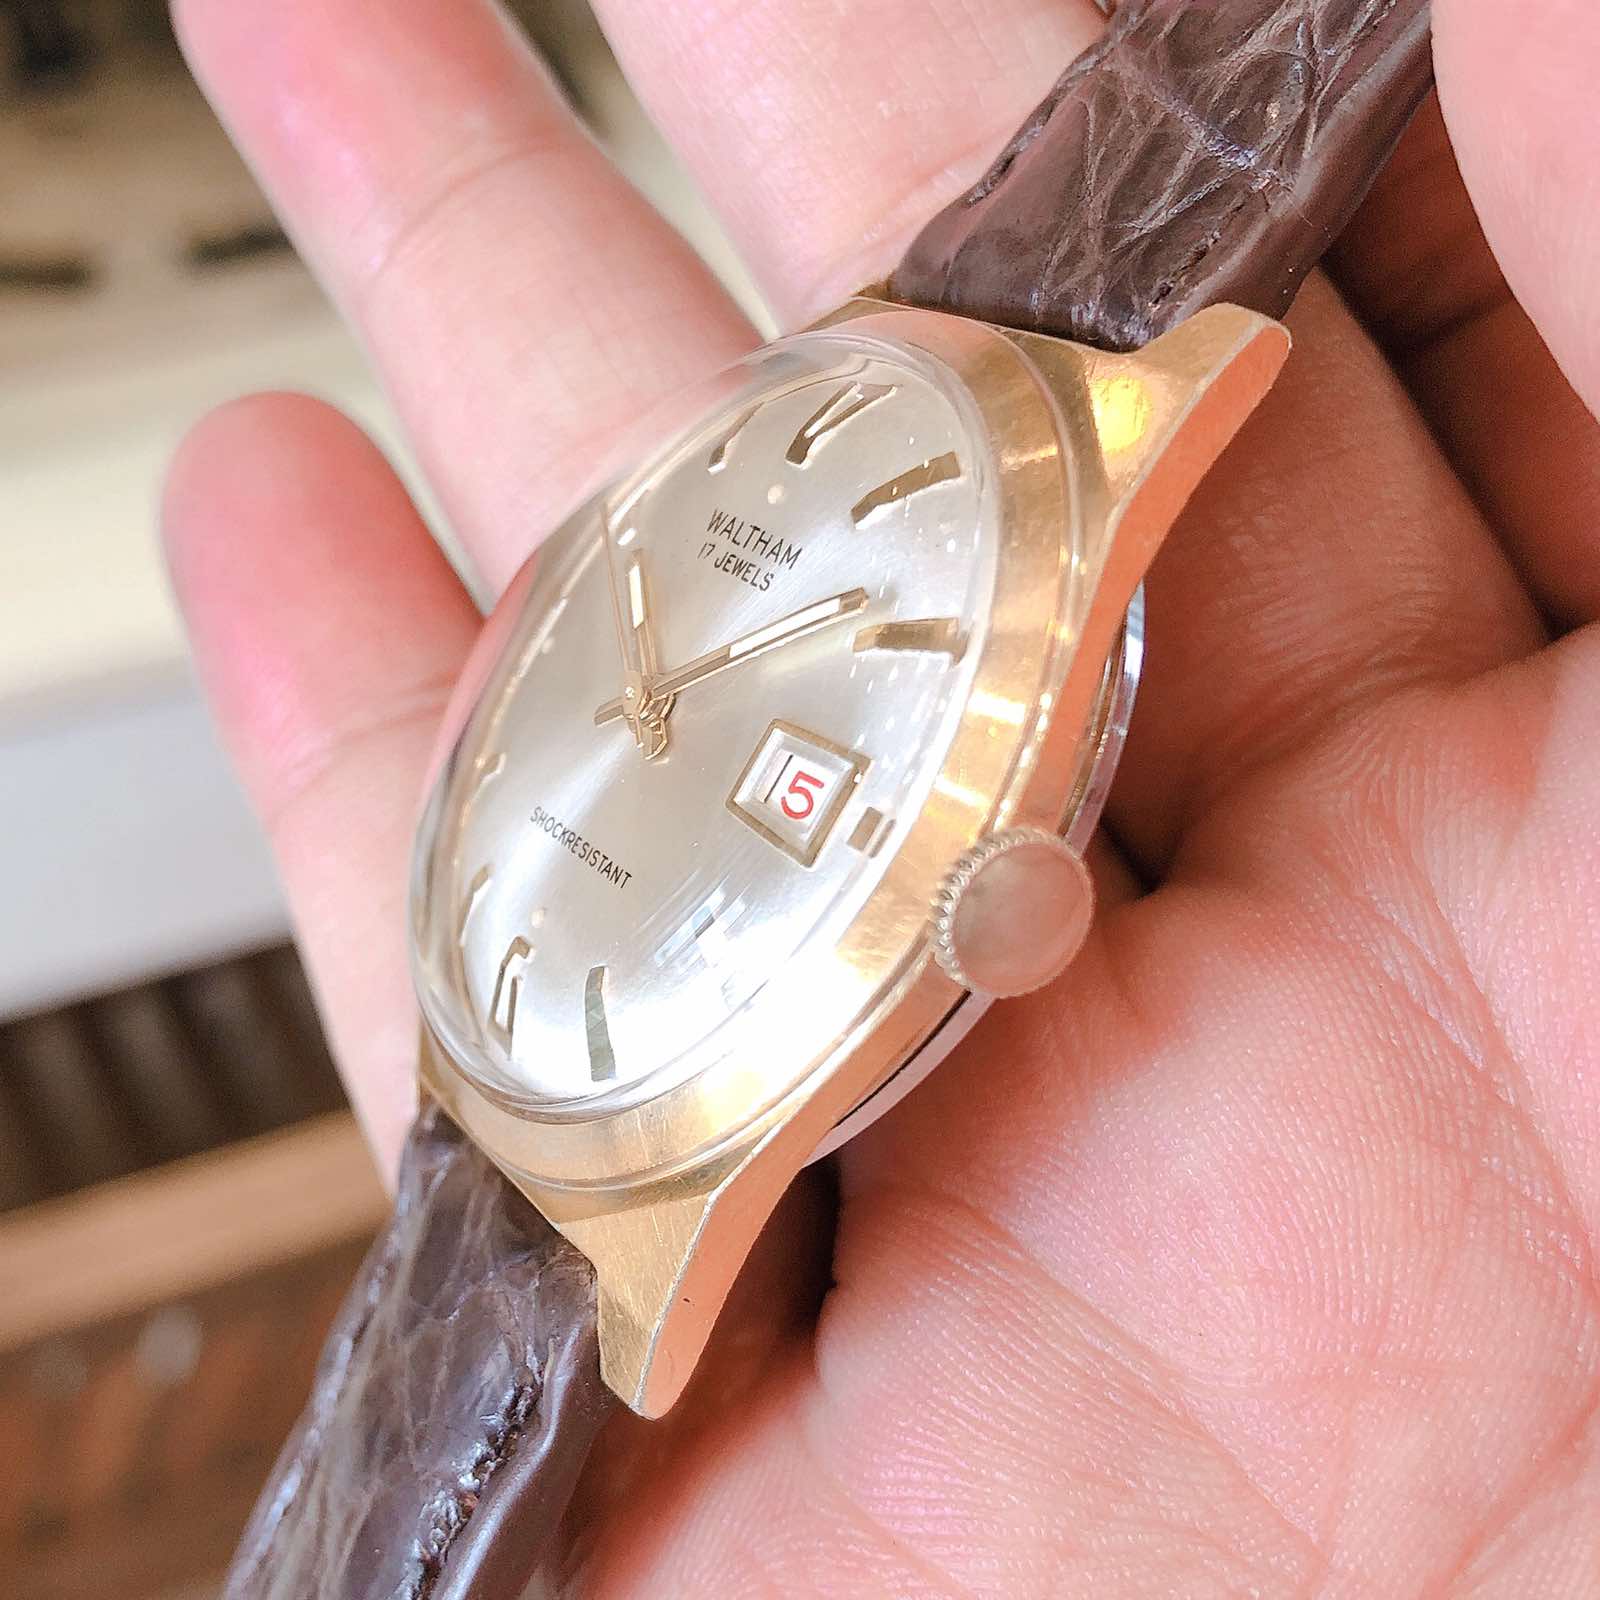 Đồng hồ cổ Waltham lacke 18k lên dây chính hãng Thụy Sĩ